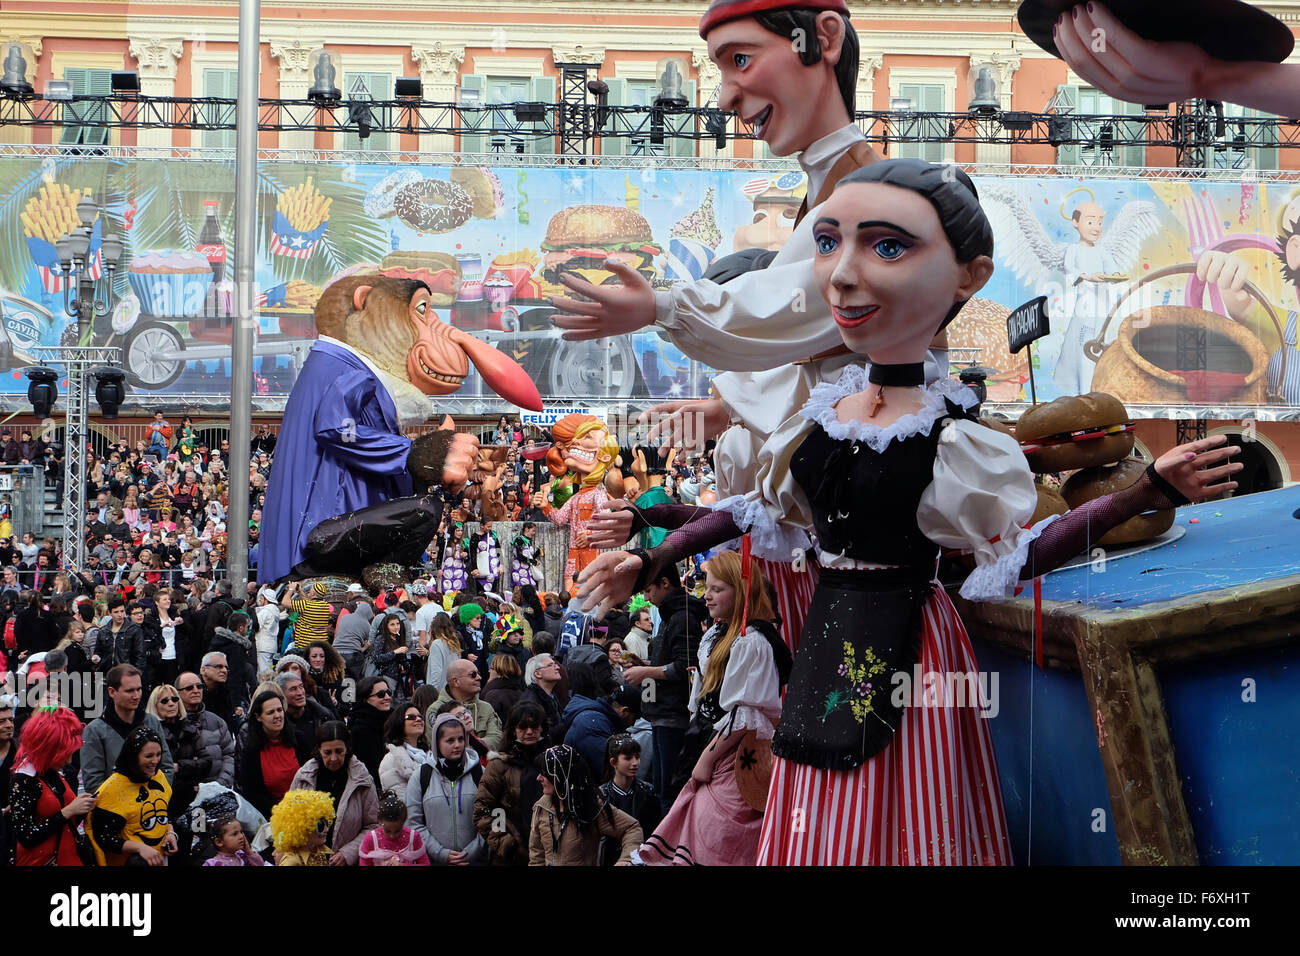 La promotion d'un flotteur à l'pains traditionnels 2015 Carnaval de Nice en France ainsi qu'une foule colorée Banque D'Images